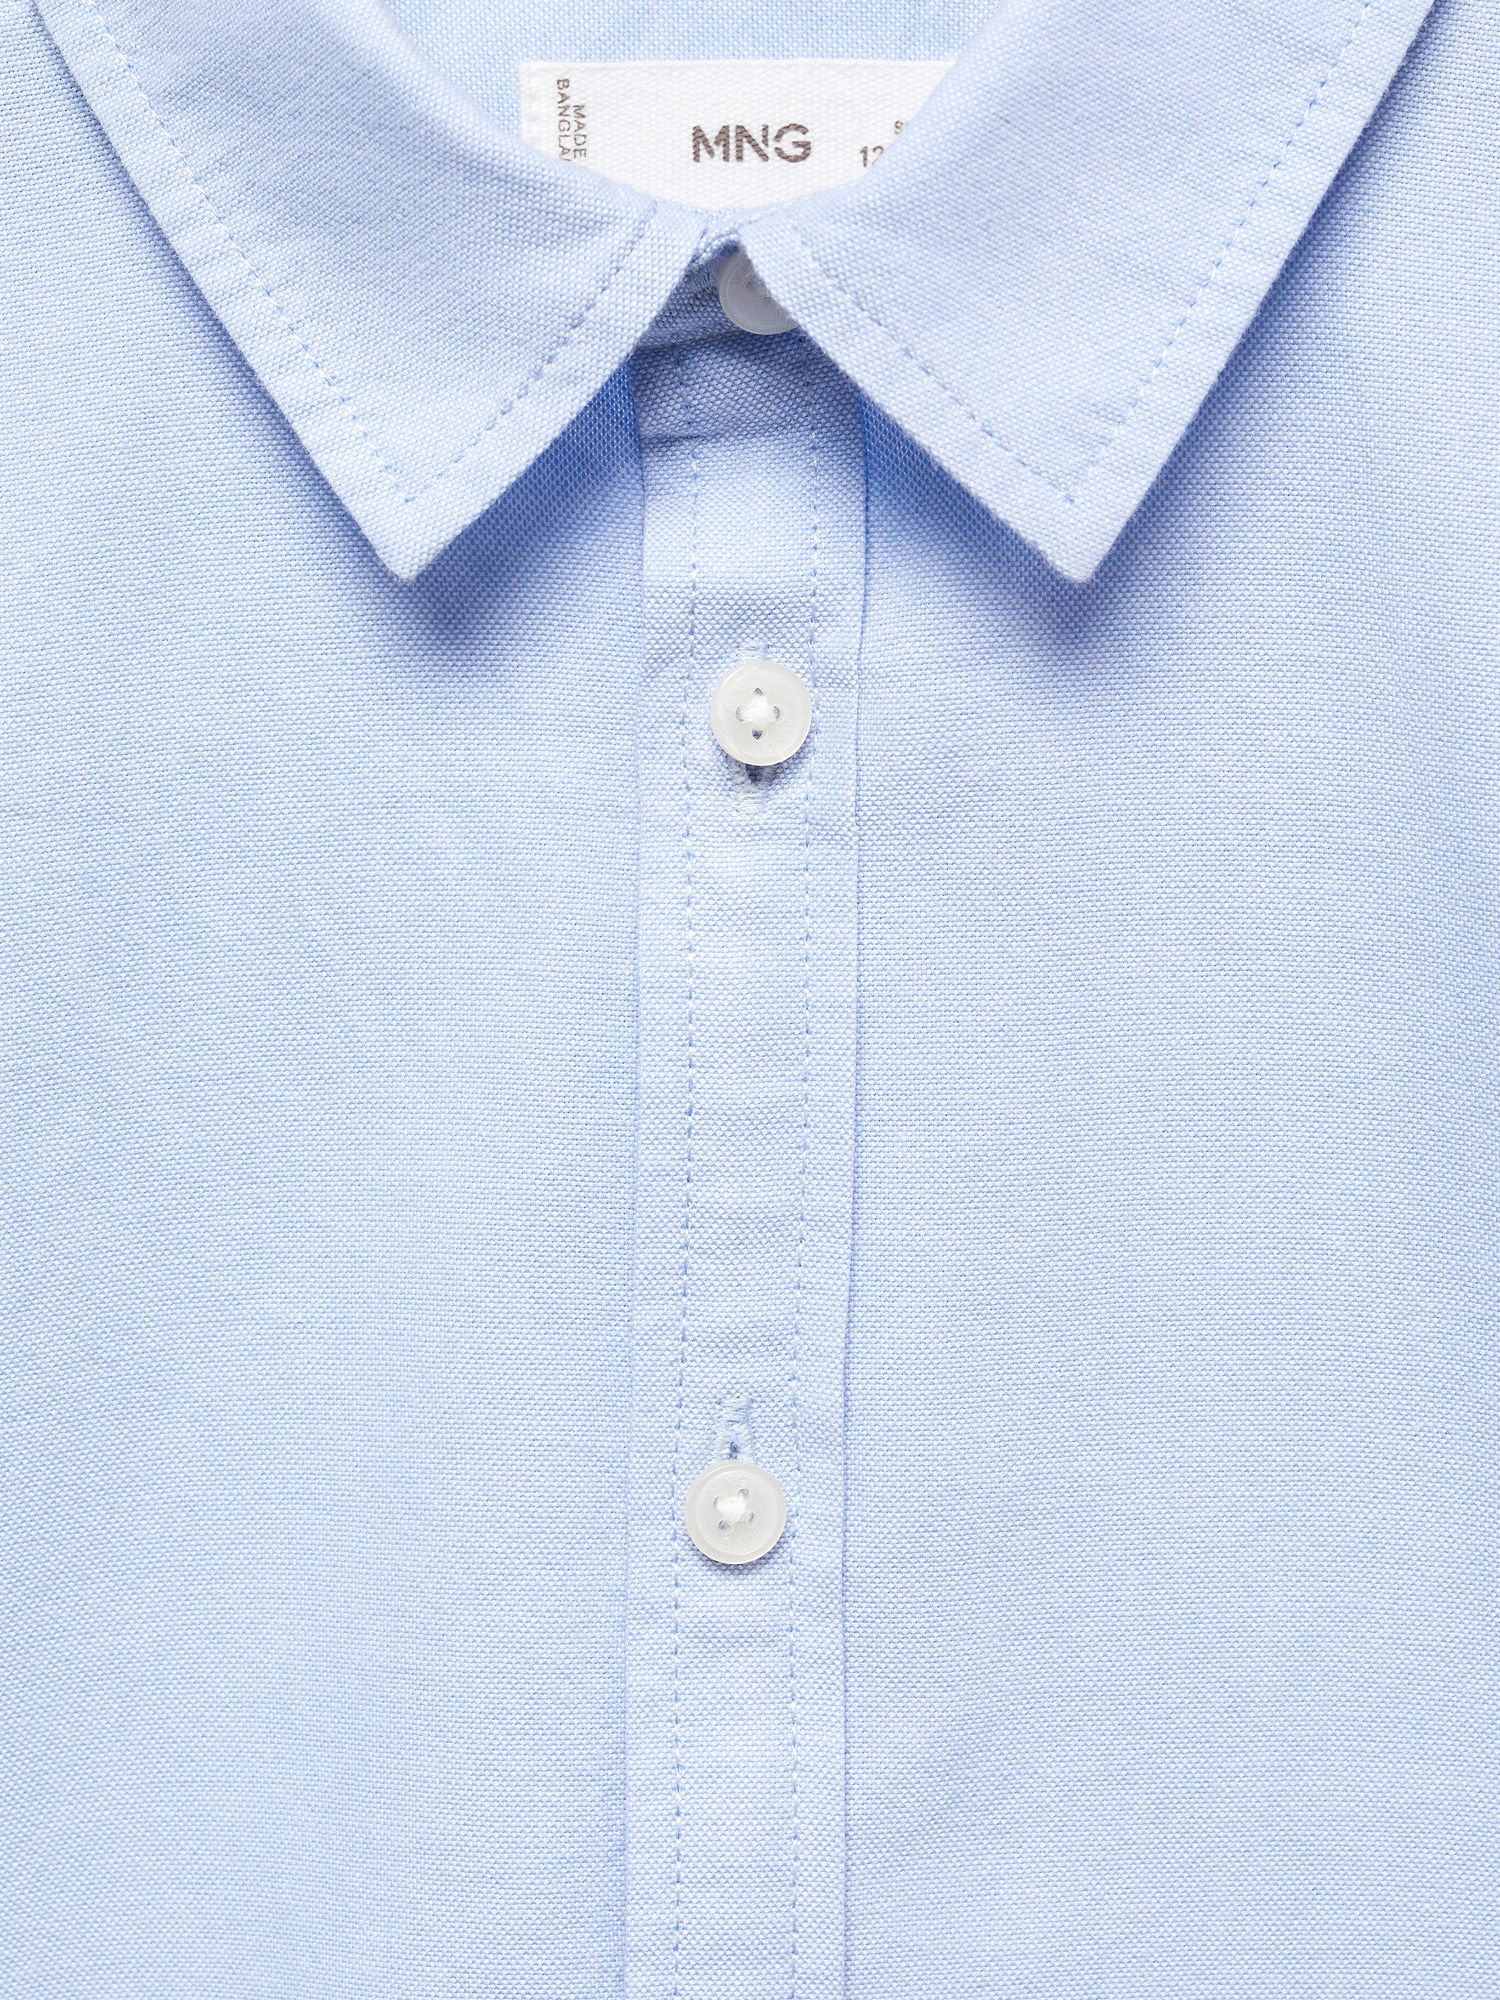 Mango Kids' Regular Fit Cotton Oxford Shirt, Pastel Blue, 6 years